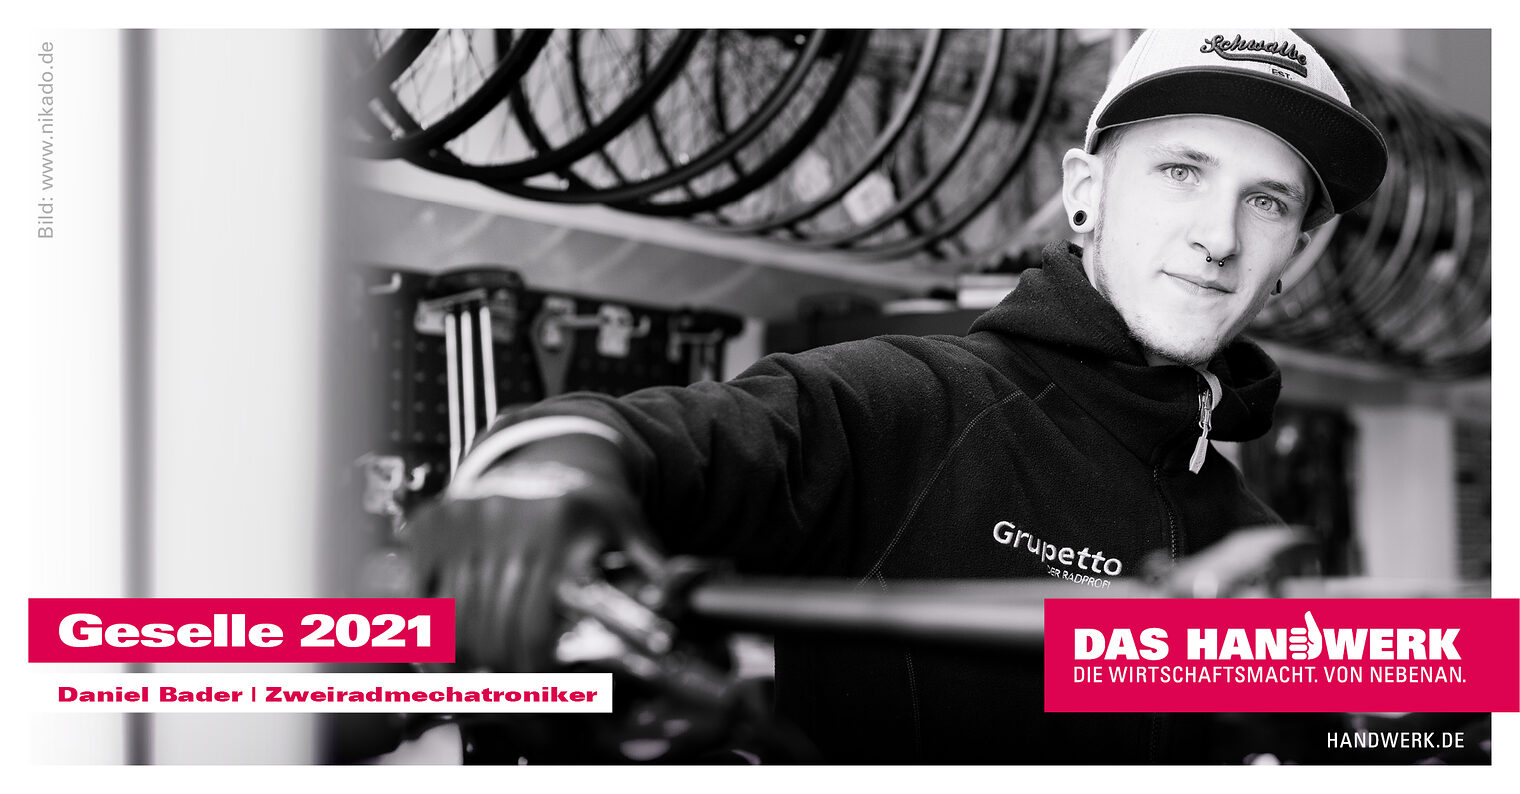 Gesellinnen und Gesellen 2021: Daniel Bader | Zweiradmechatroniker